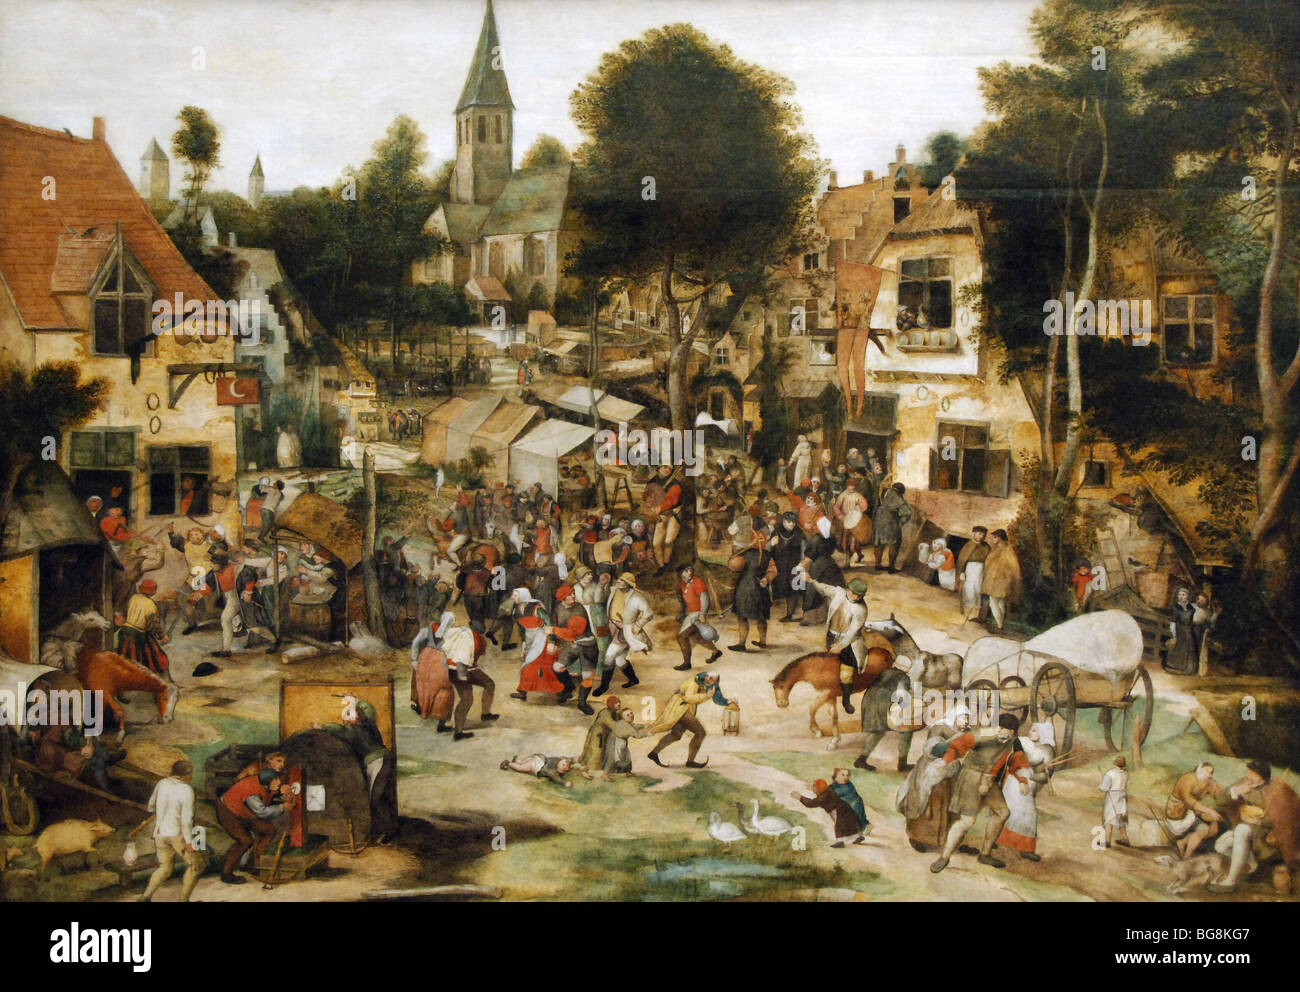 Balten, Pieter (1527-1584). Flämischer Maler und Kupferstecher. FAIR. Museum der bildenden Künste. Budapest. Ungarn. Stockfoto